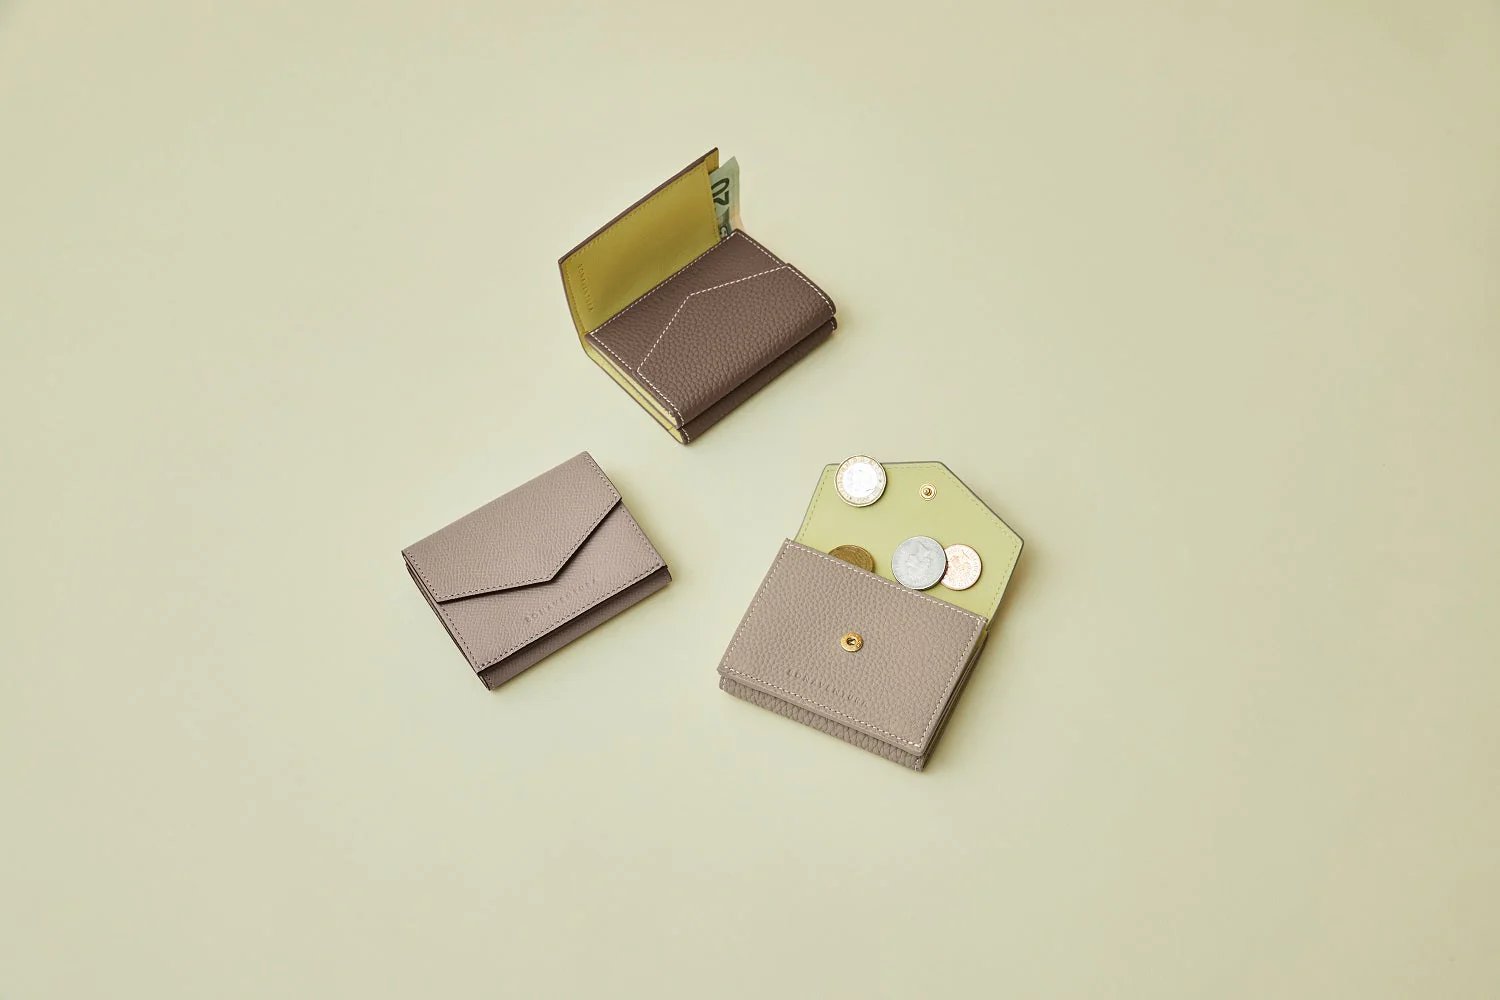 上質なレザーの三つ折り財布 – イタリア(ミラノ)発の高級革製品の通販 ...